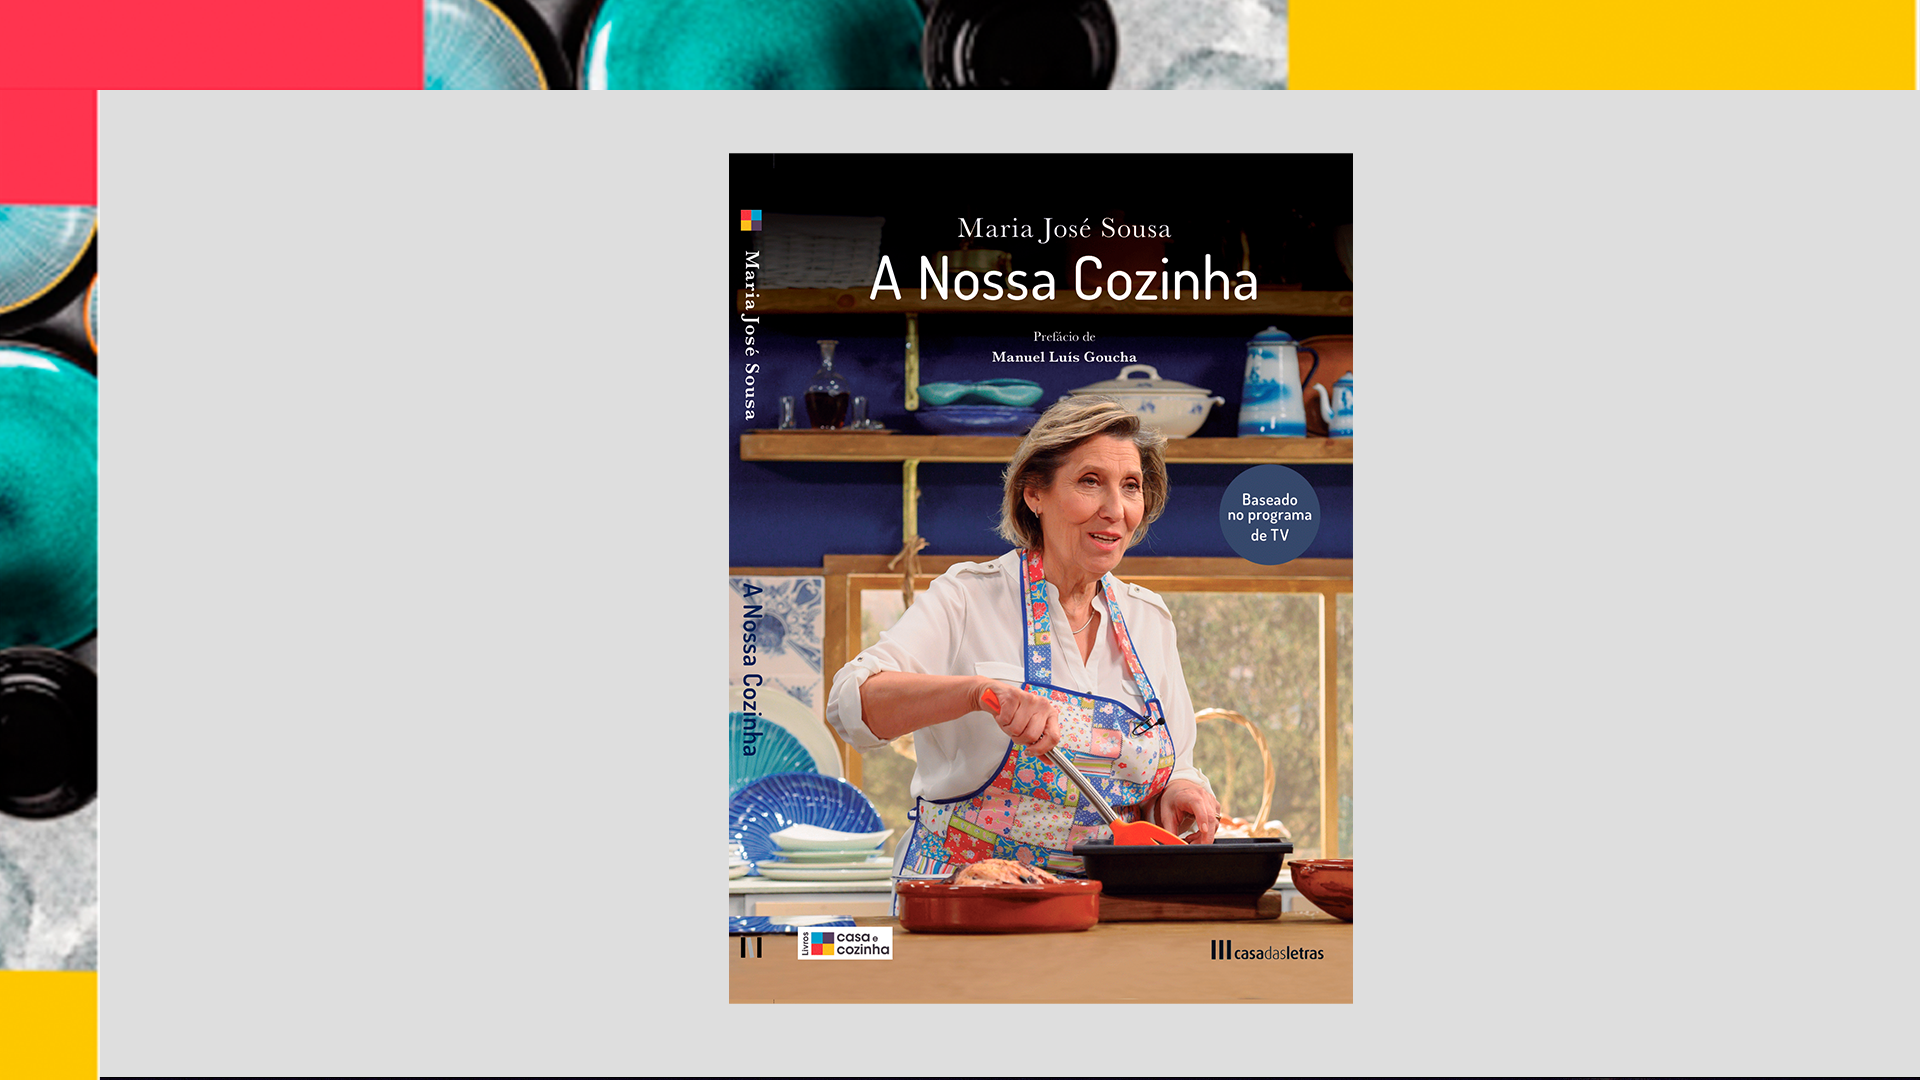 CASA E COZINHA lança livro baseado no programa “A Nossa Cozinha” de Maria José Sousa